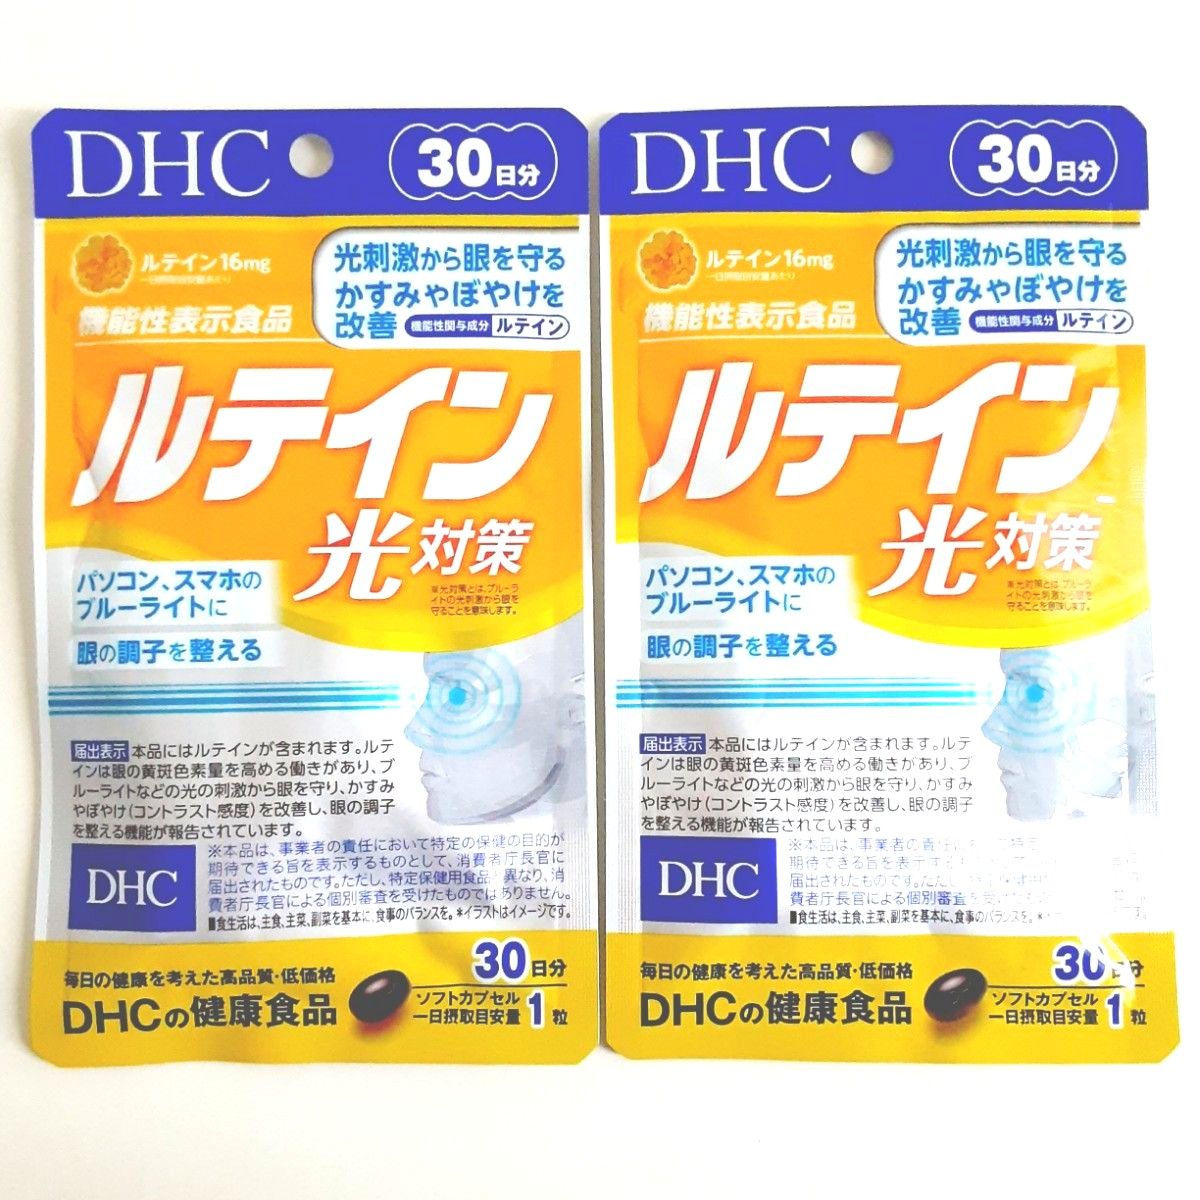 【新品・未開封】DHC DHCの健康食品 ルテイン光対策 30粒入り×2袋